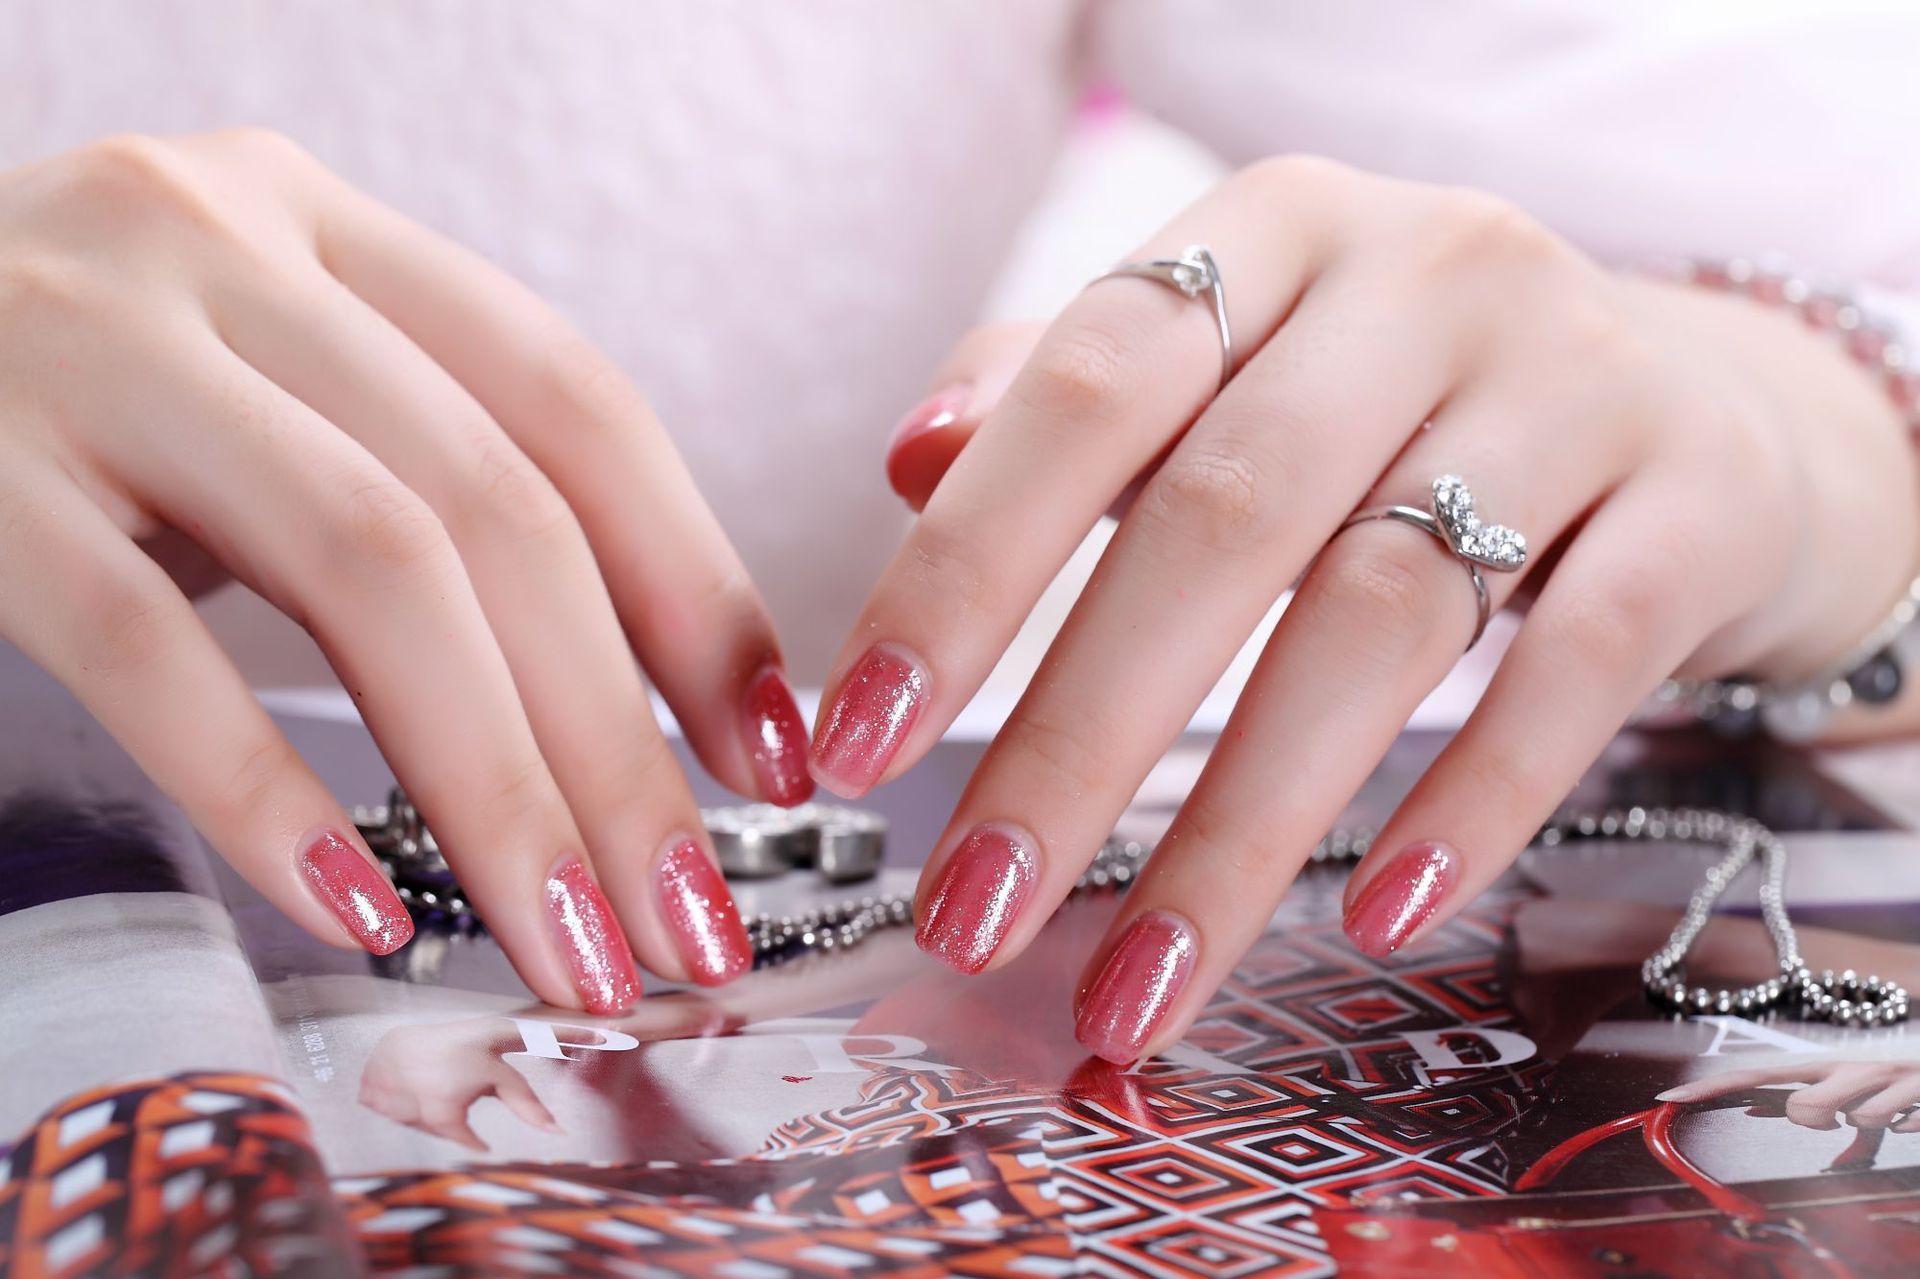 2. "Vintage Rose" nail polish color - wide 6